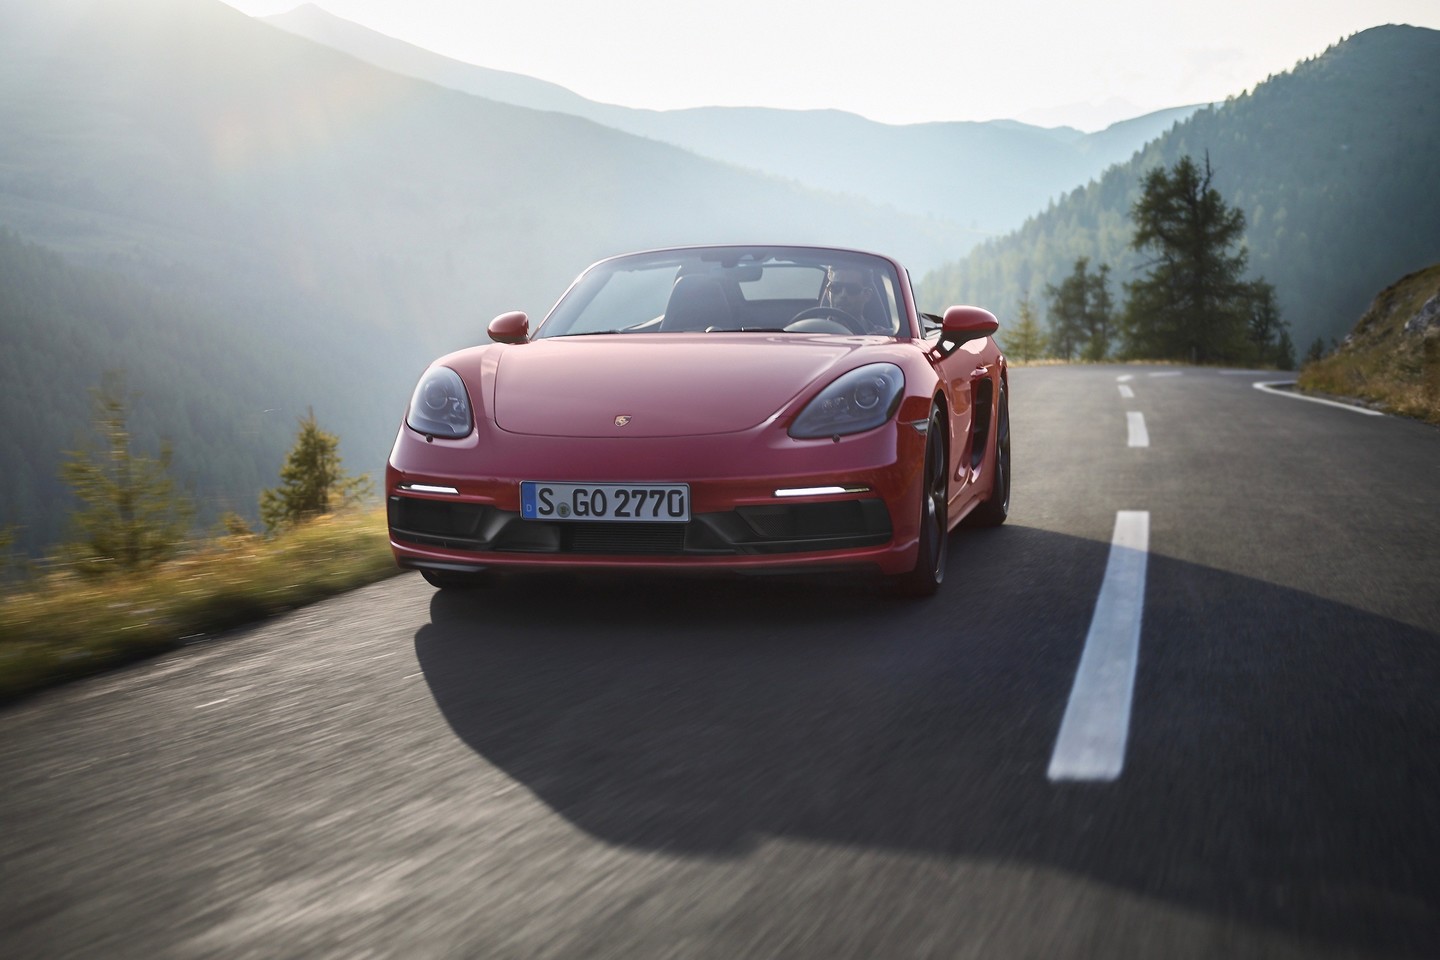  Dar galingesni „Porsche 718 GTS" - jau pakeliui į Lietuvą.<br> Gamintojo nuotr.